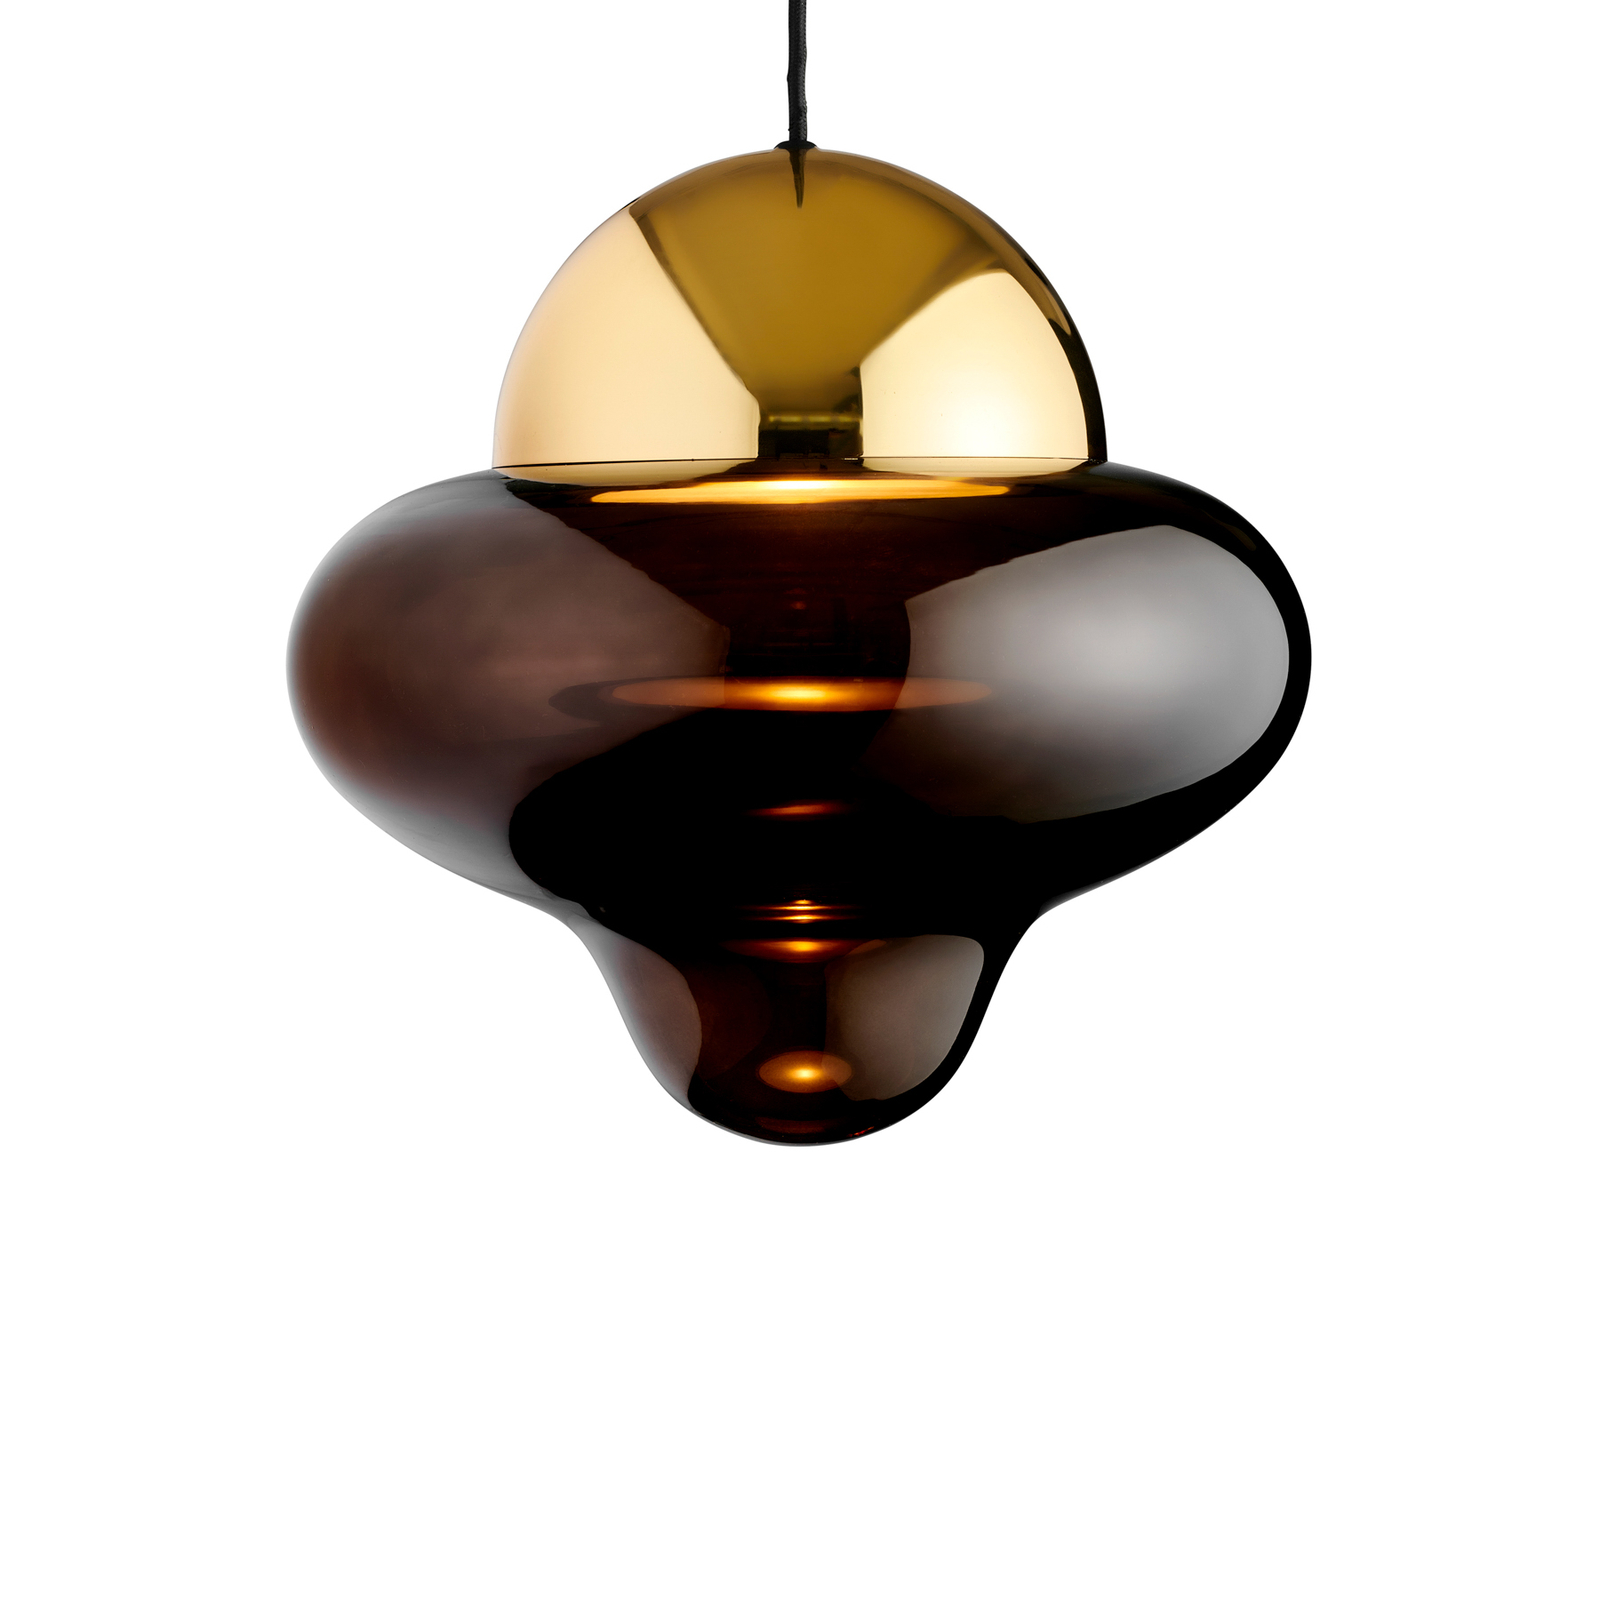 LED-Hängeleuchte Nutty XL, braun / goldfarben, Ø 30 cm, Glas